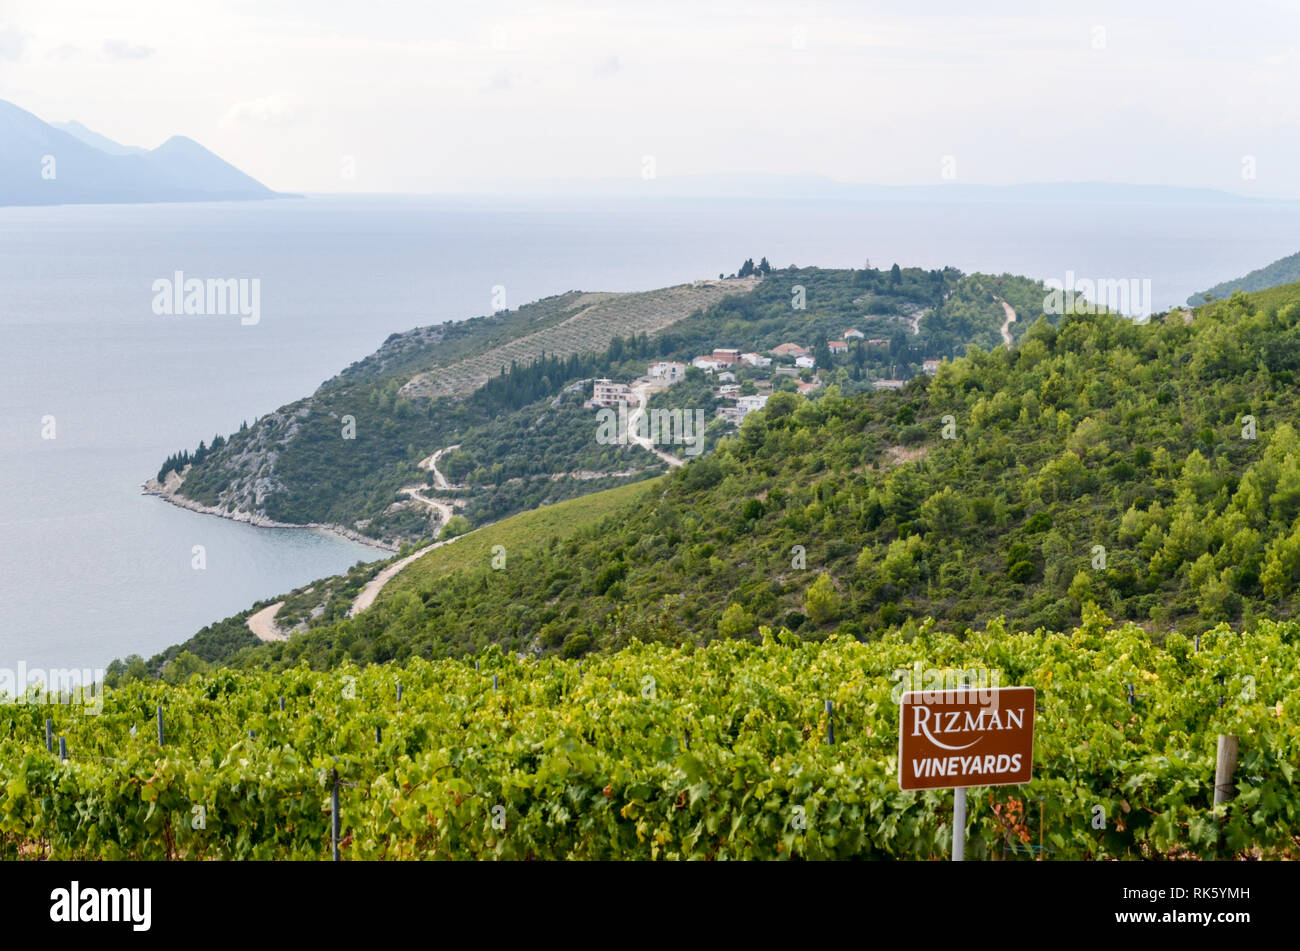 Vignoble croate, Rizman.Le long de la côte Adriatique. Banque D'Images